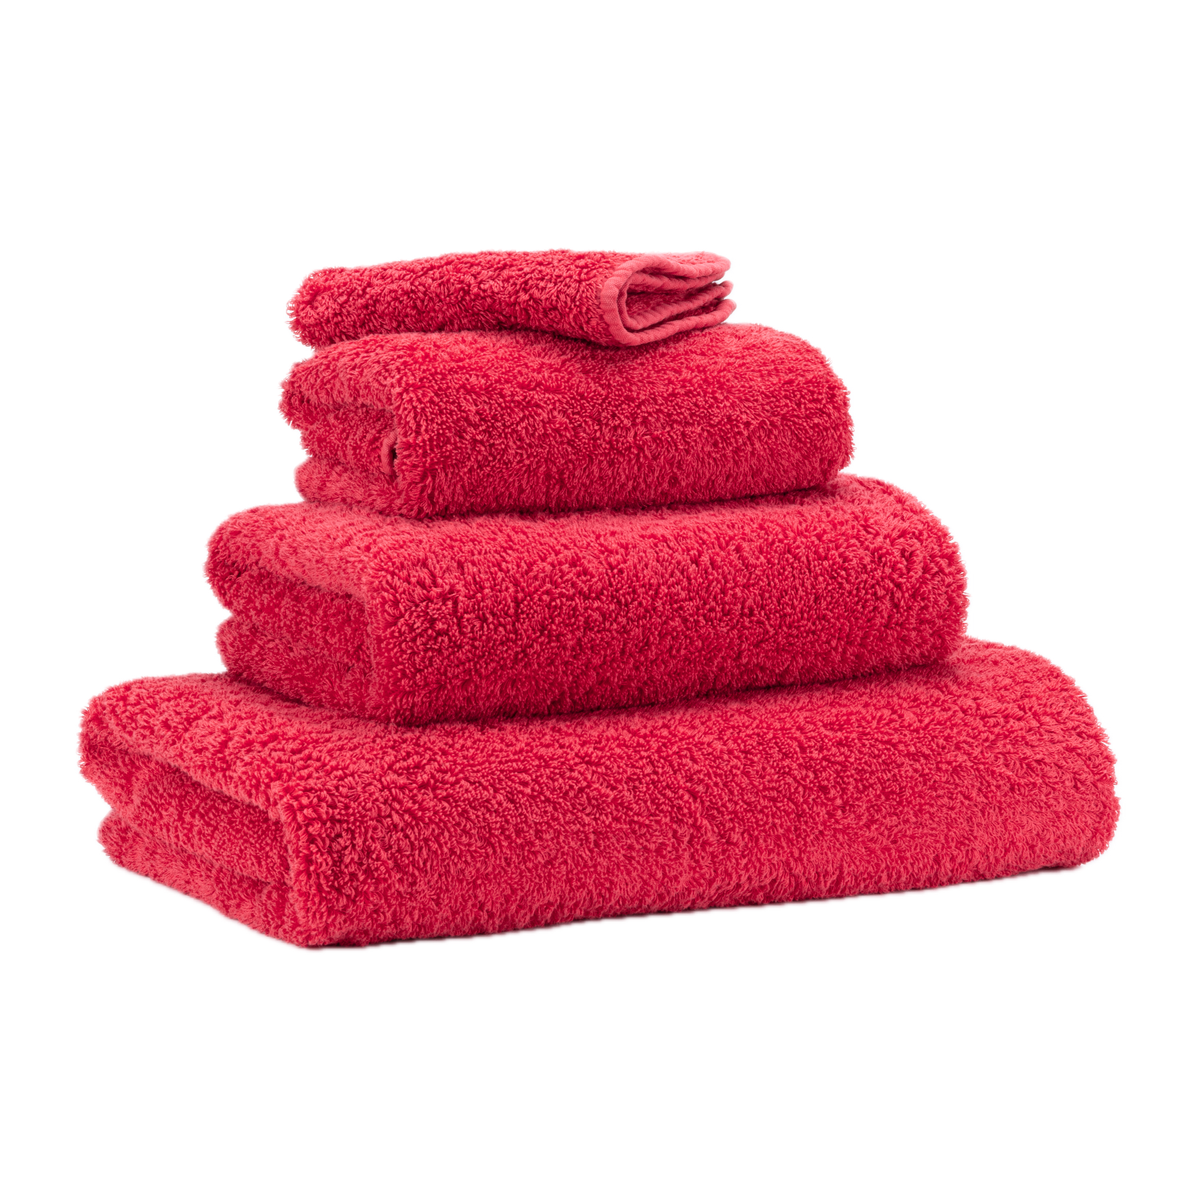 Abyss Super Pile Bath Towels Viva Magenta Stack Slanted